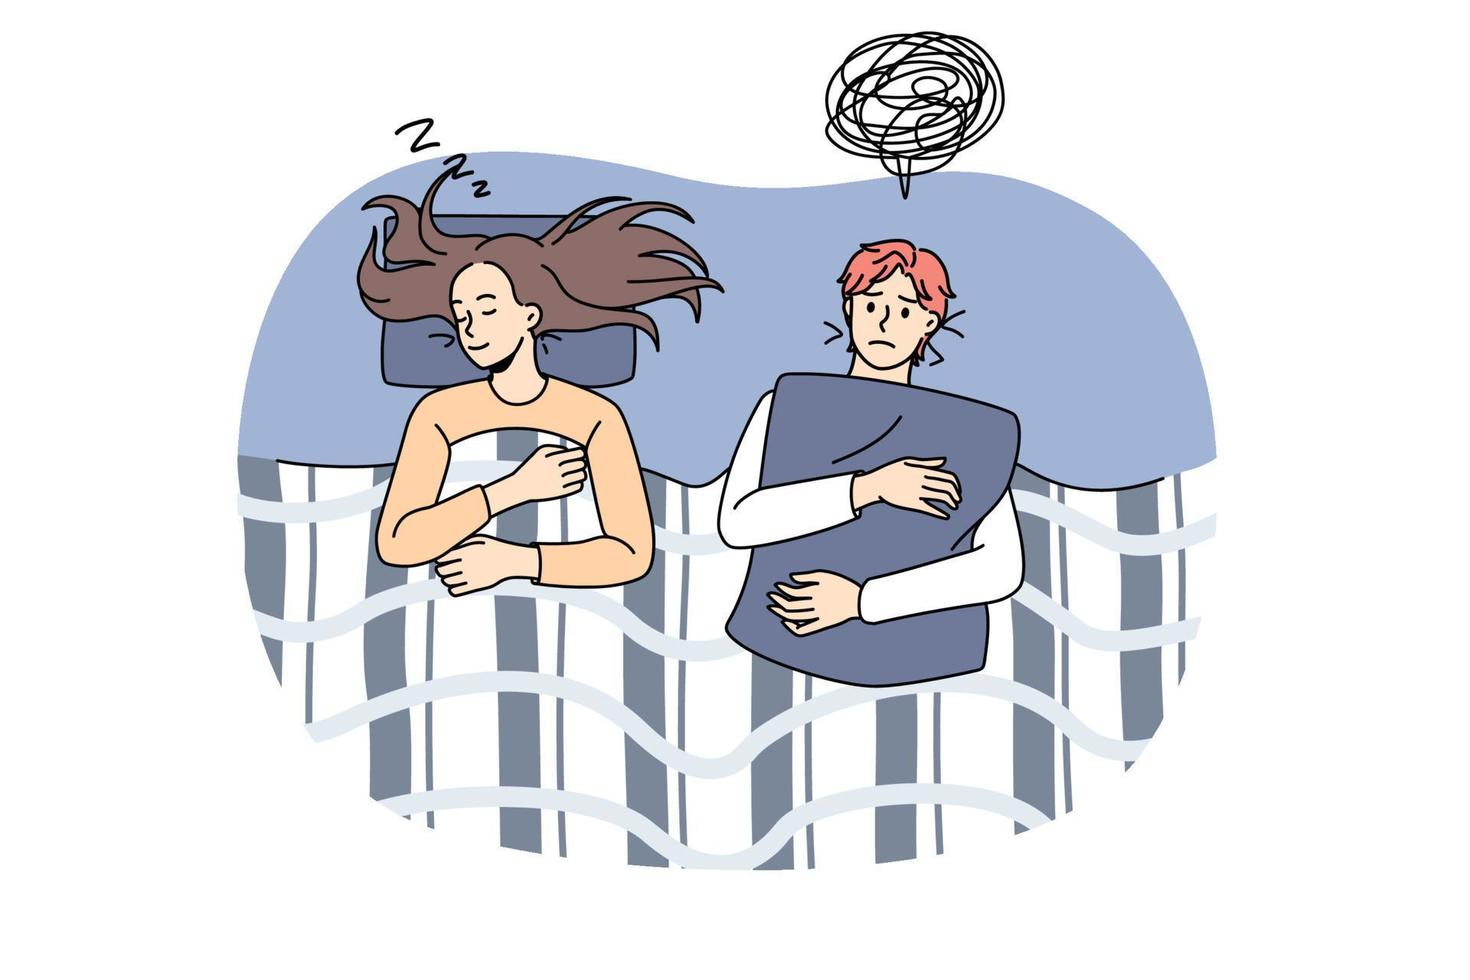 personnes anxieuses sans sommeil pendant la nuit. illustration vectorielle d'un couple éveillé pendant la nuit souffrant d'un problème d'insomnie vecteur